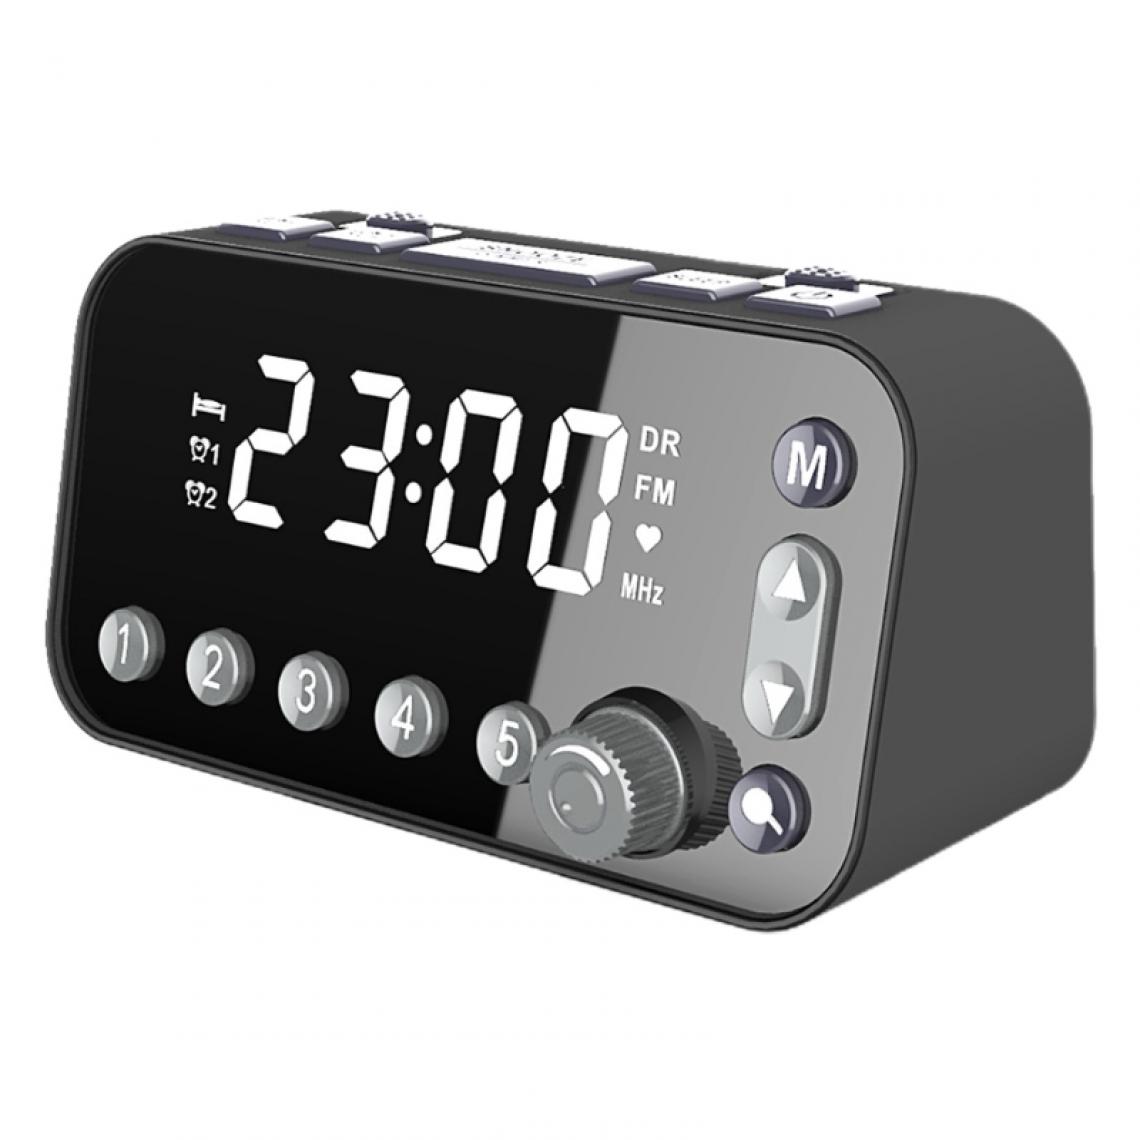 Universal - Table de chevet rétro alarme numérique horloge LED grand écran DAB/FM radio réveil double |(Le noir) - Radio